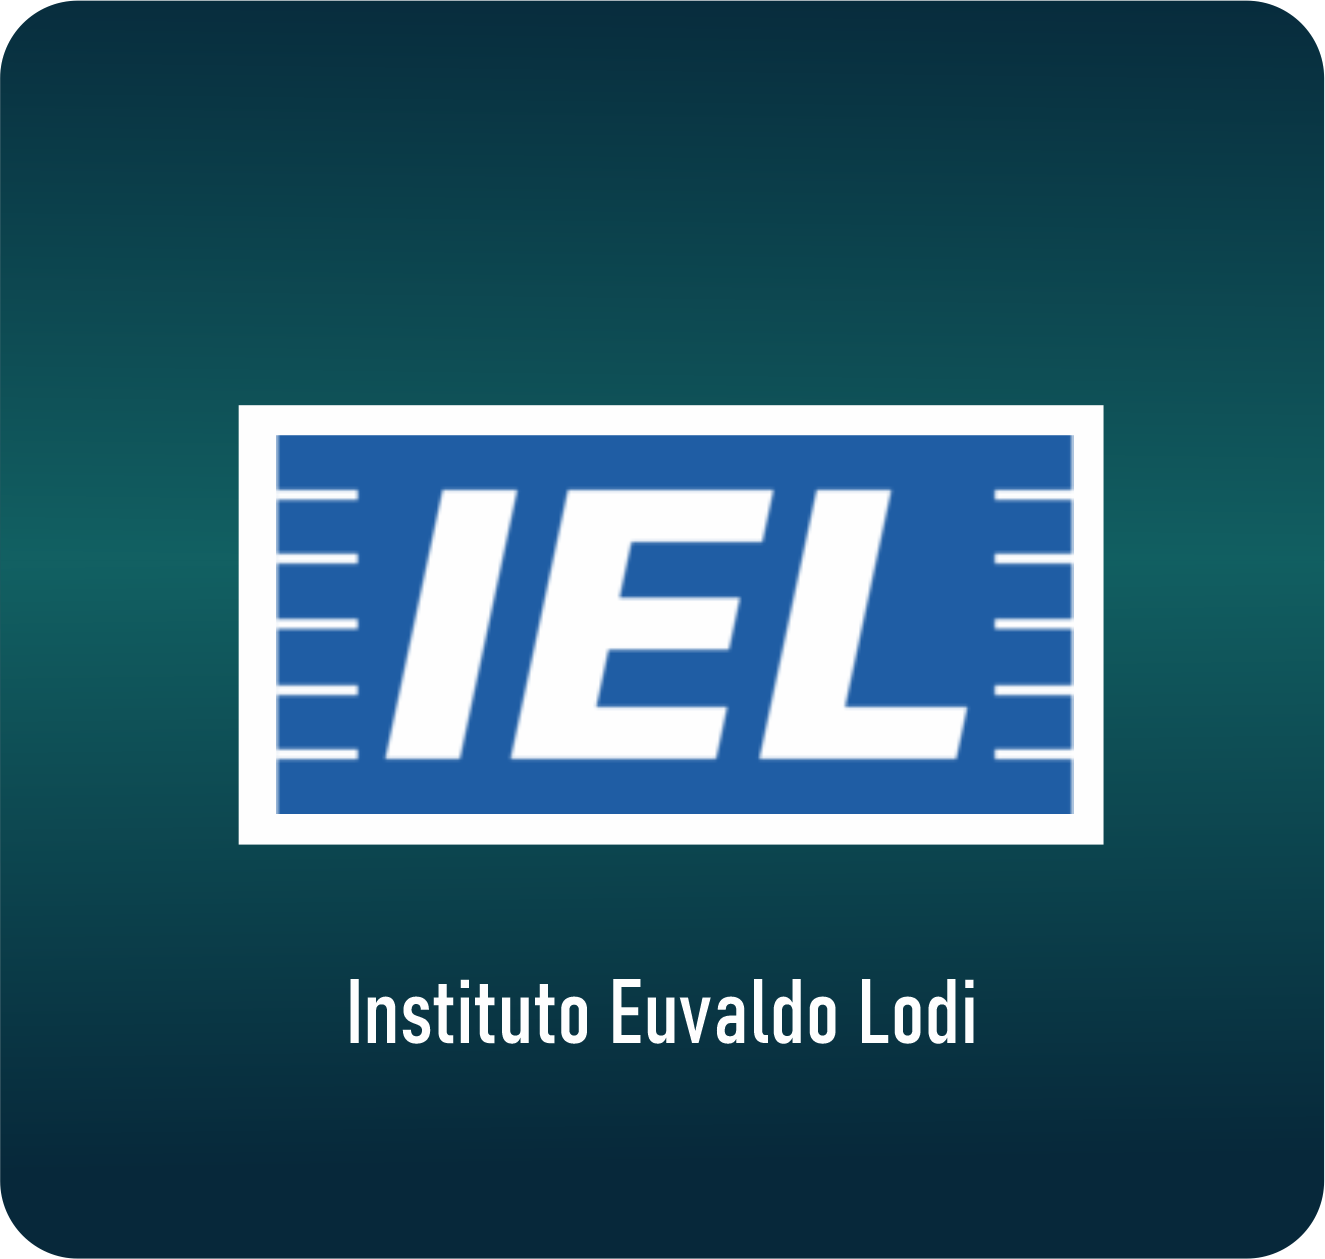 Instituto Euvaldo Lodi